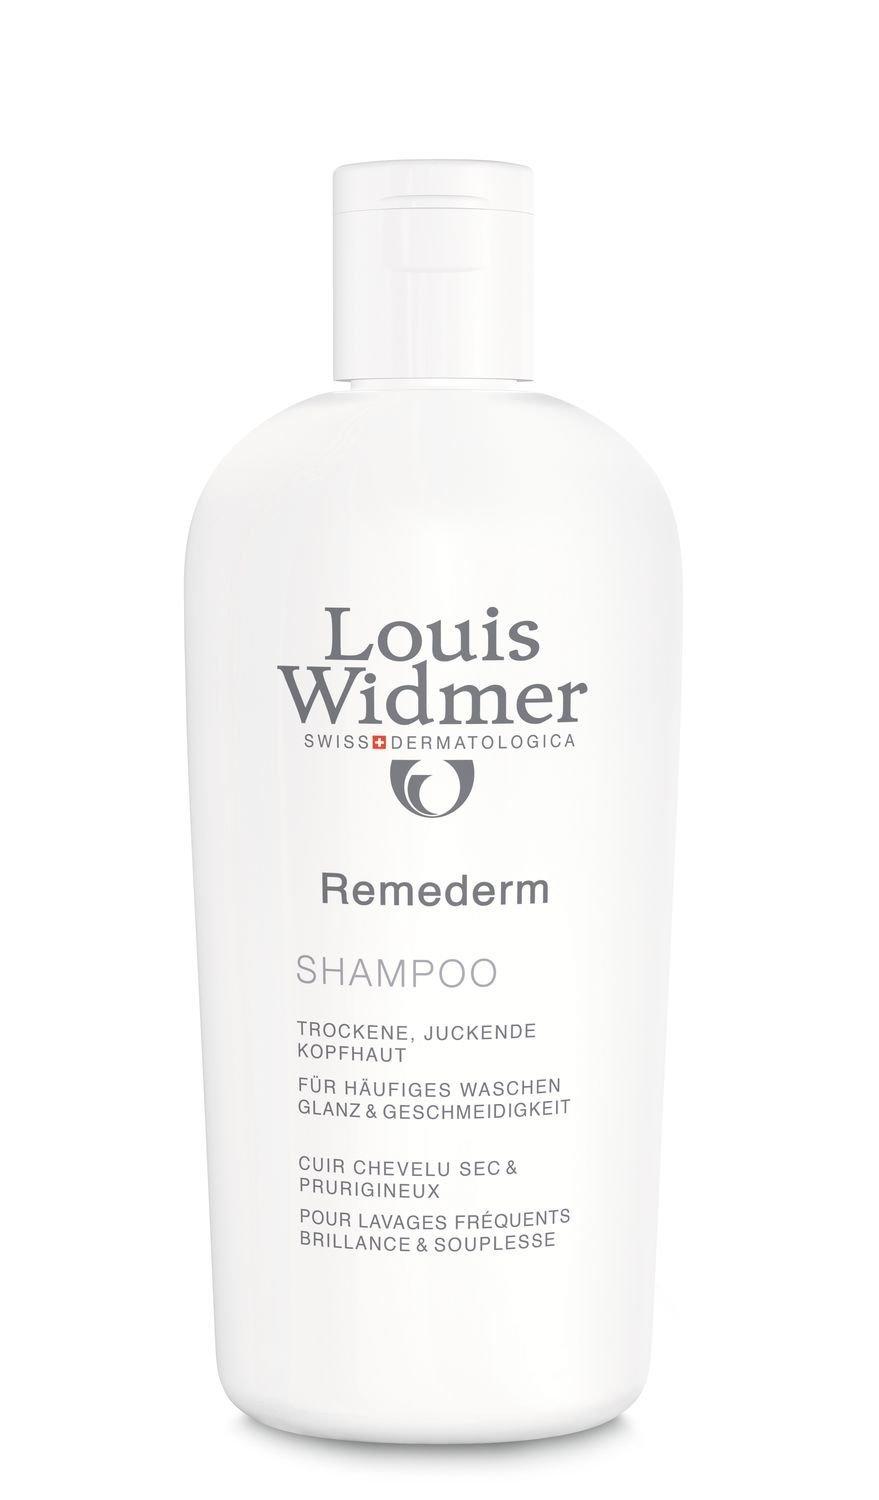 Louis Widmer  Remederm Shampoo unparfümiert  